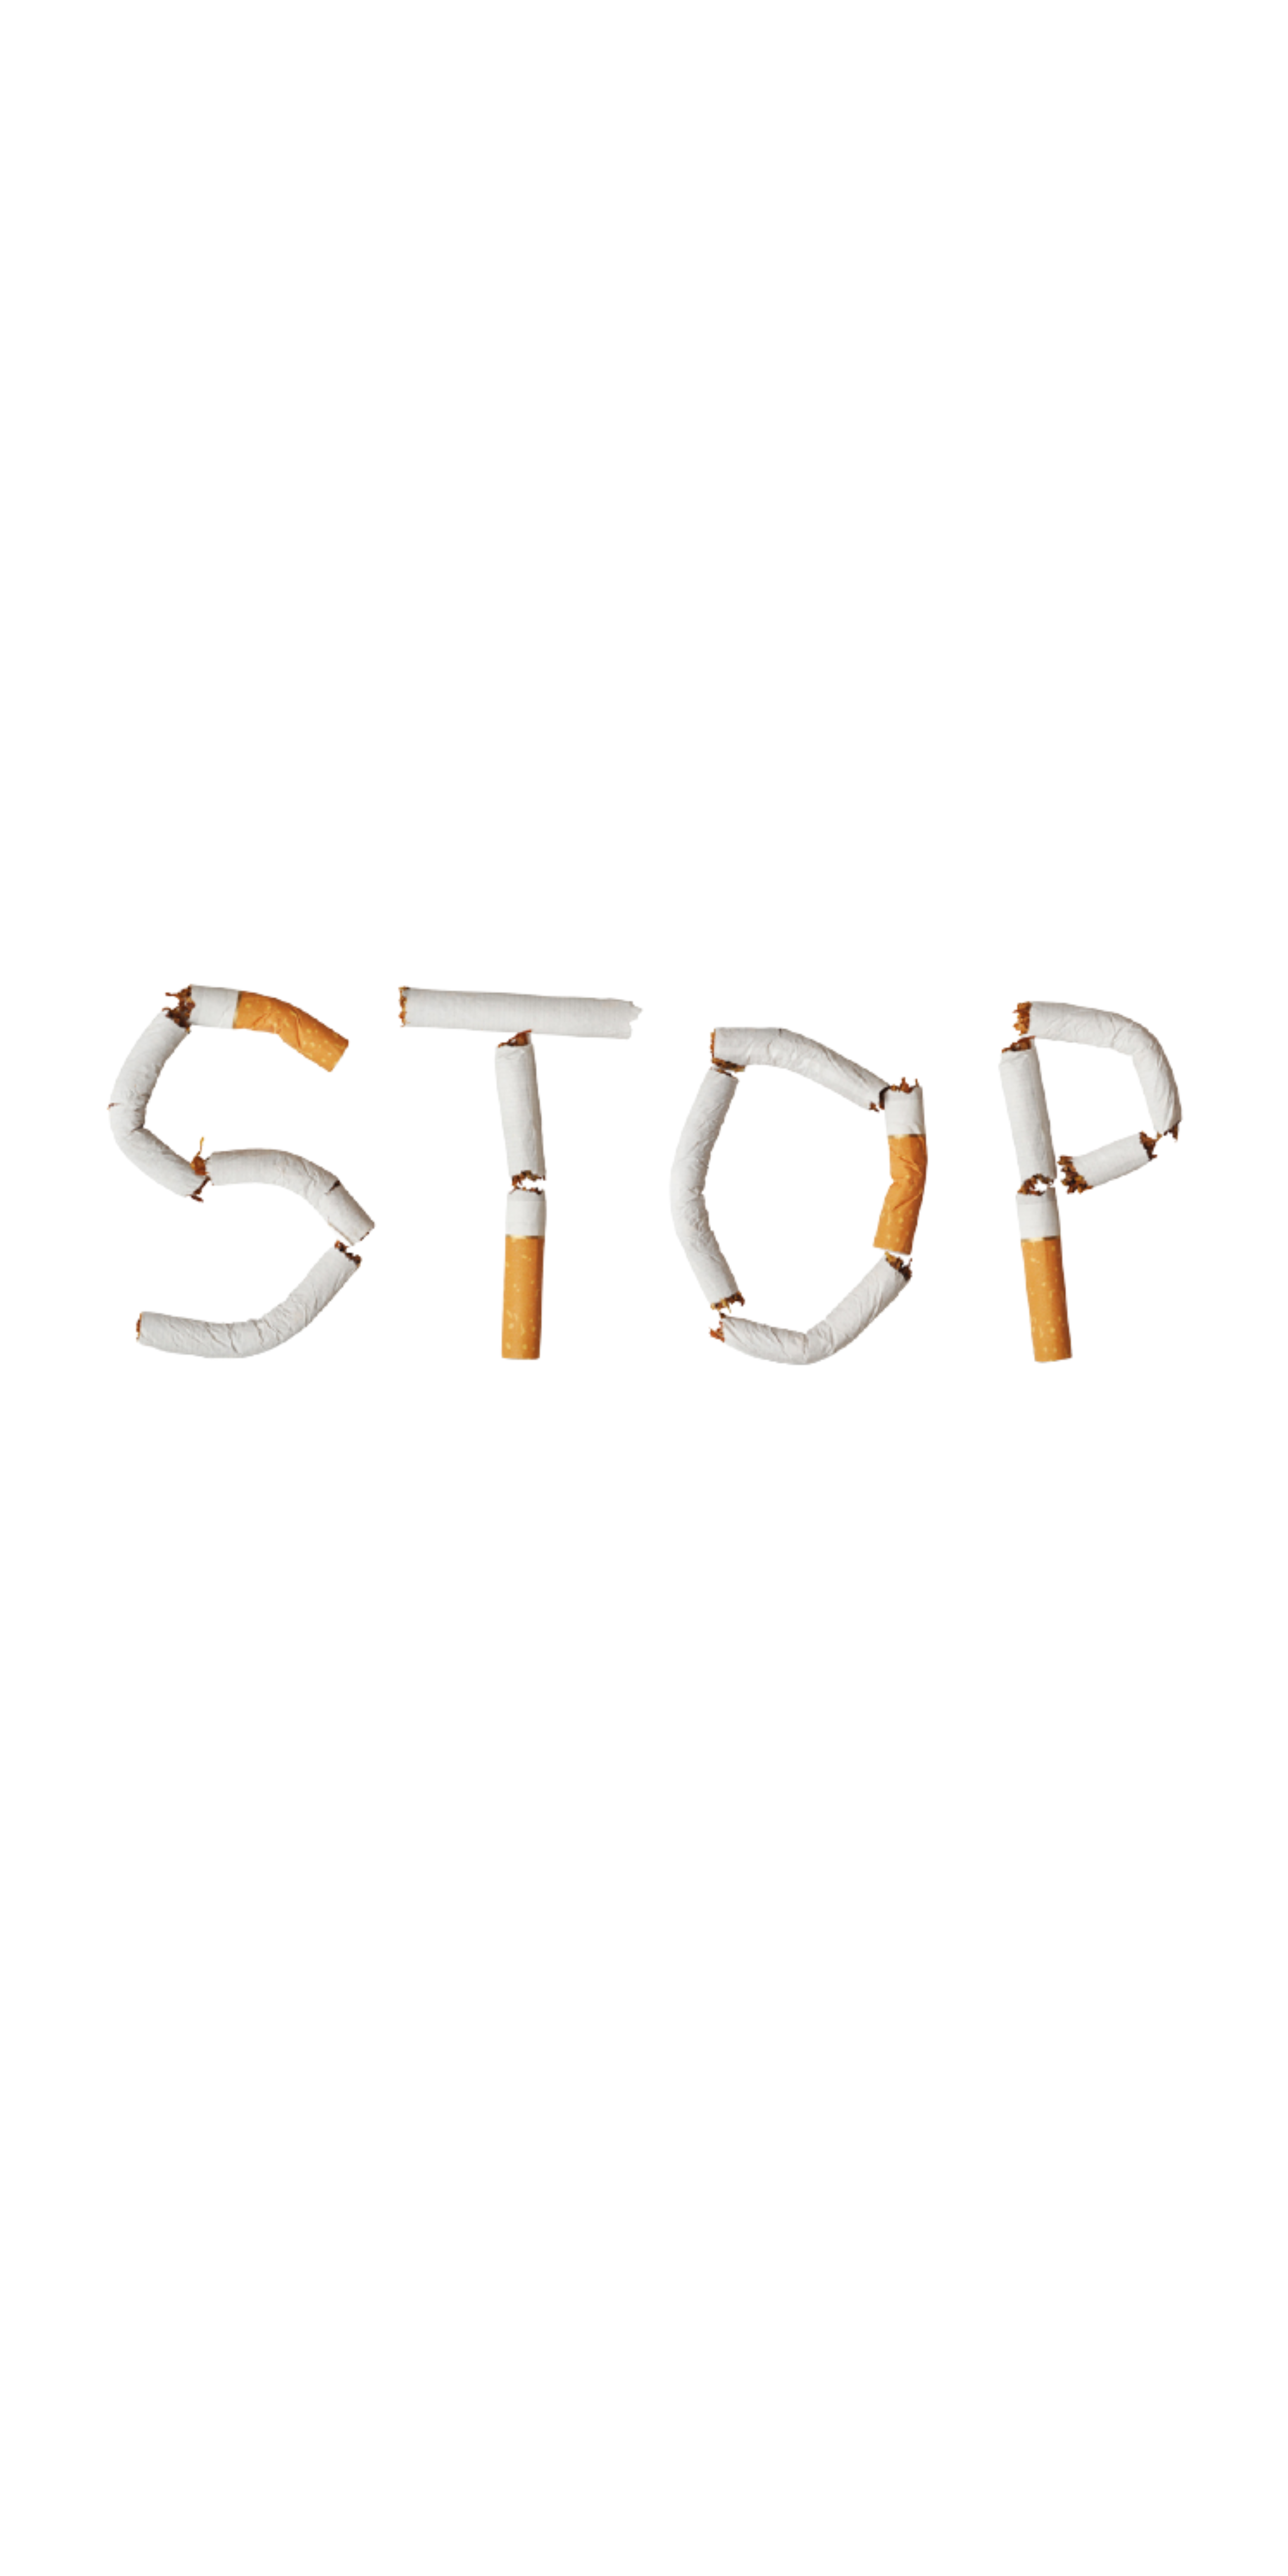 Mod'Vap vous conseil dans votre sevrage tabagique